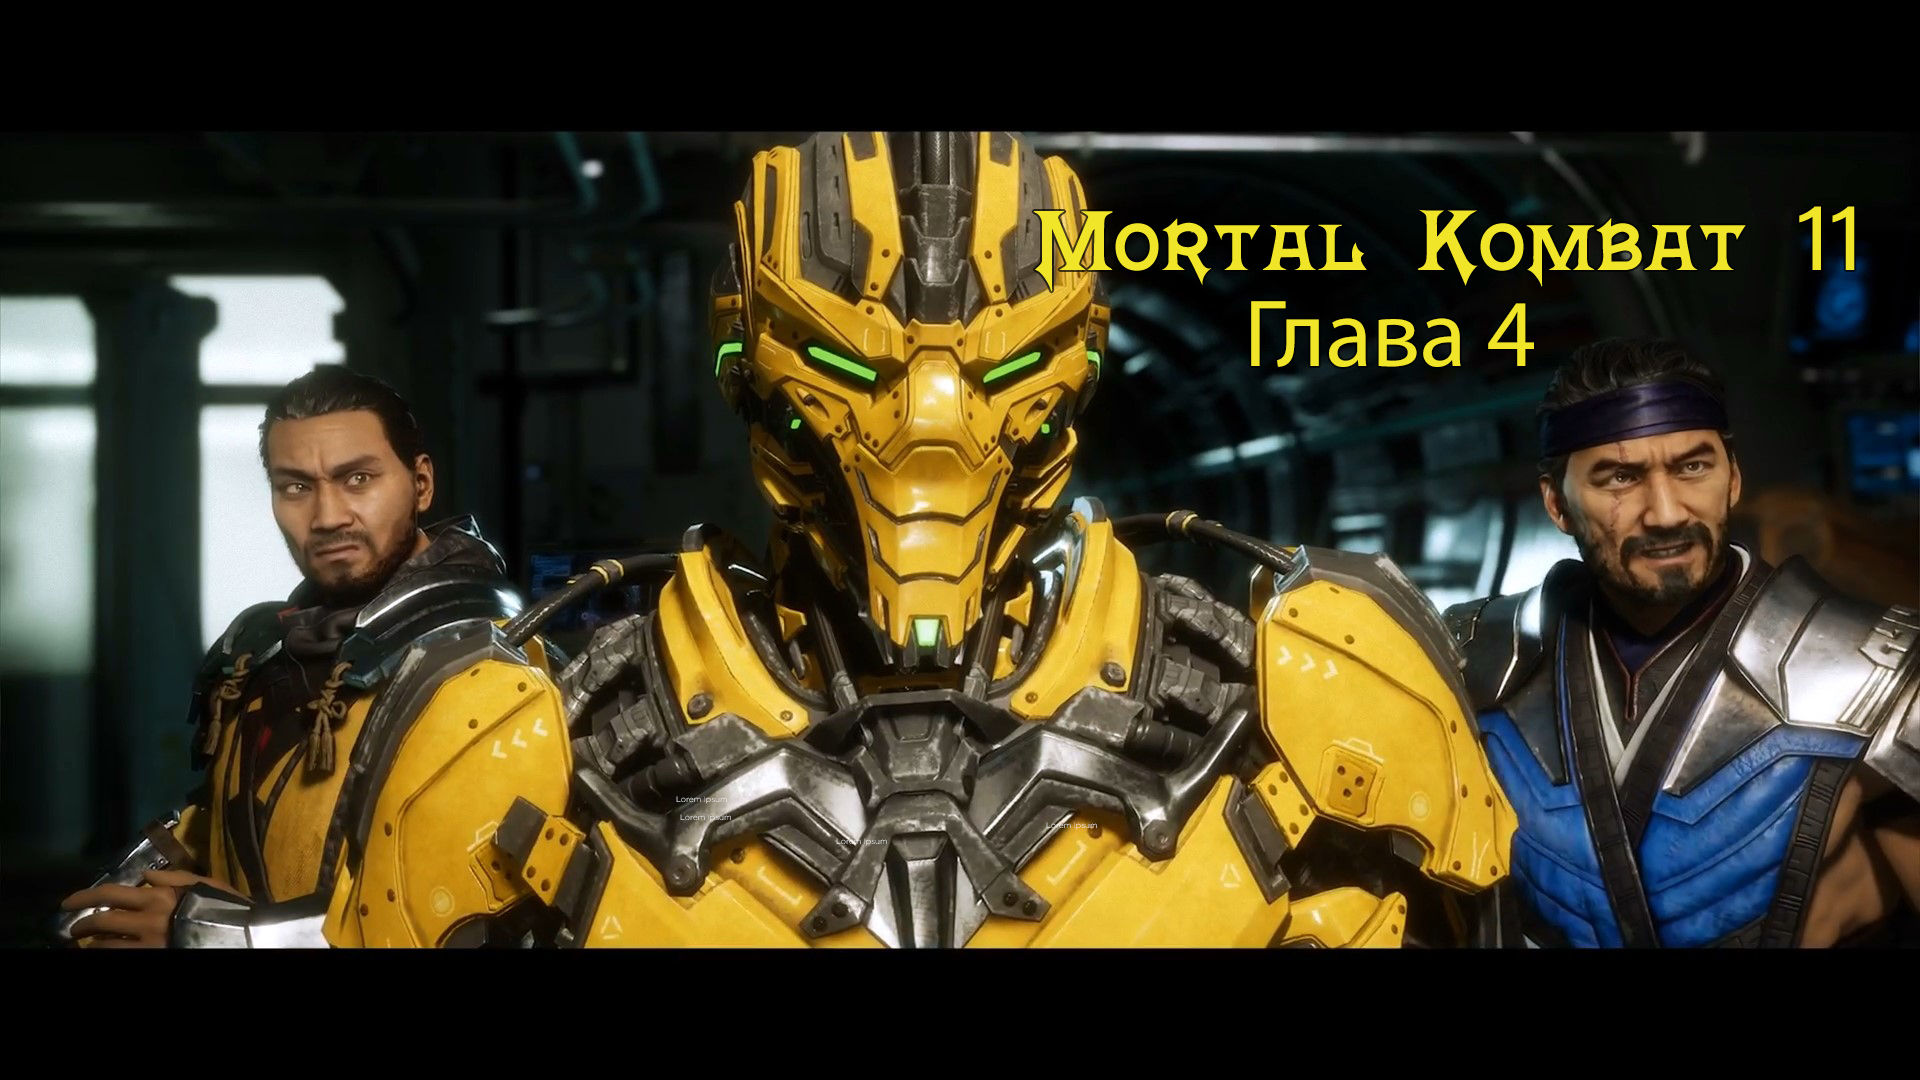 Mortal Kombat 11 Aftermath / Ultimate  - Прохождение - Глава 4: Огонь и Лёд  (Сюжет)